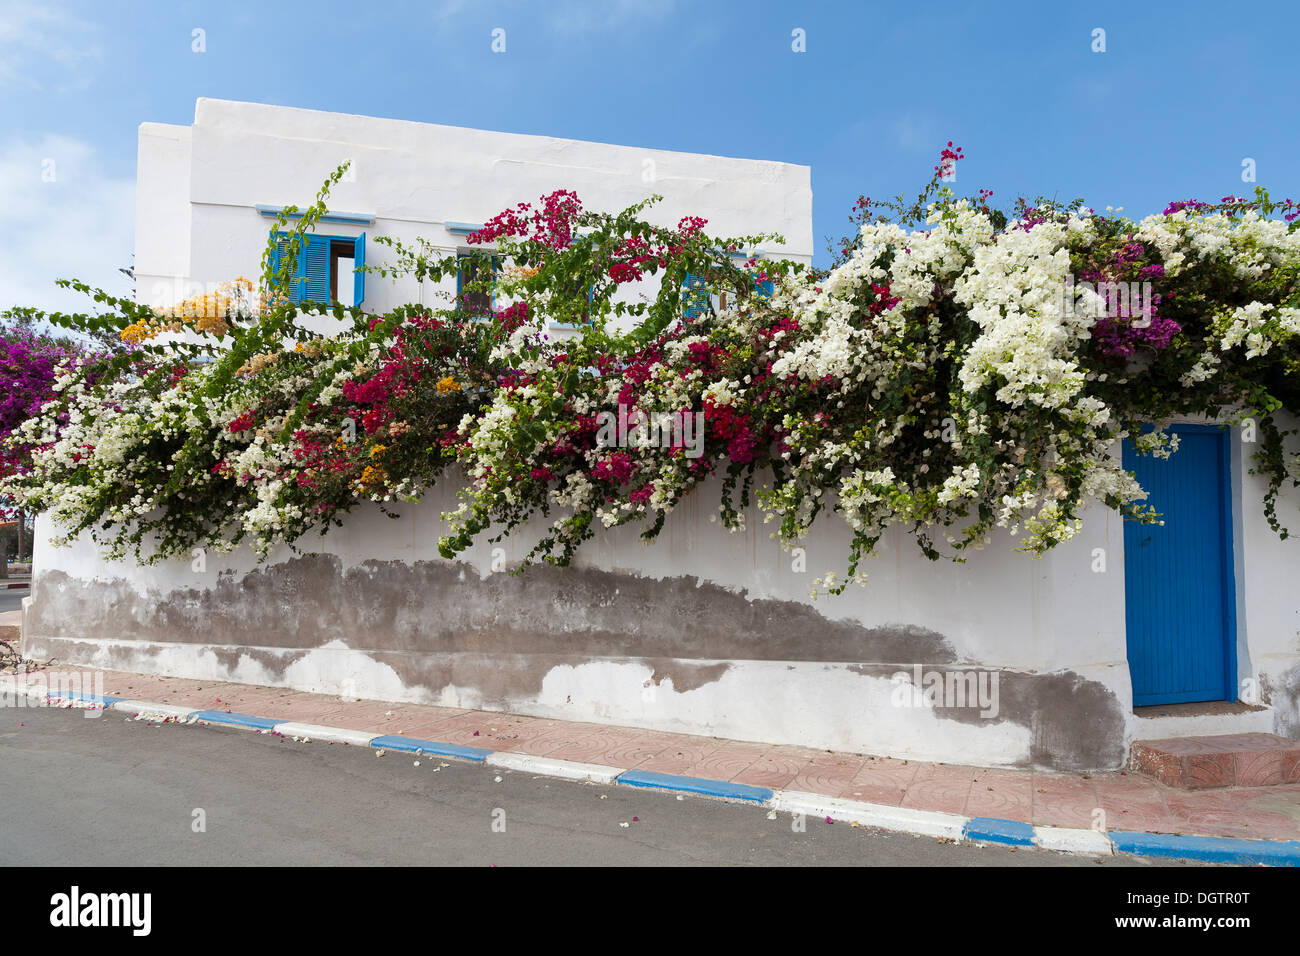 Murs de maison couverte de bougainvilliers, la Plaza de Espana à la ville de Sidi Ifni, côte atlantique du Maroc Banque D'Images